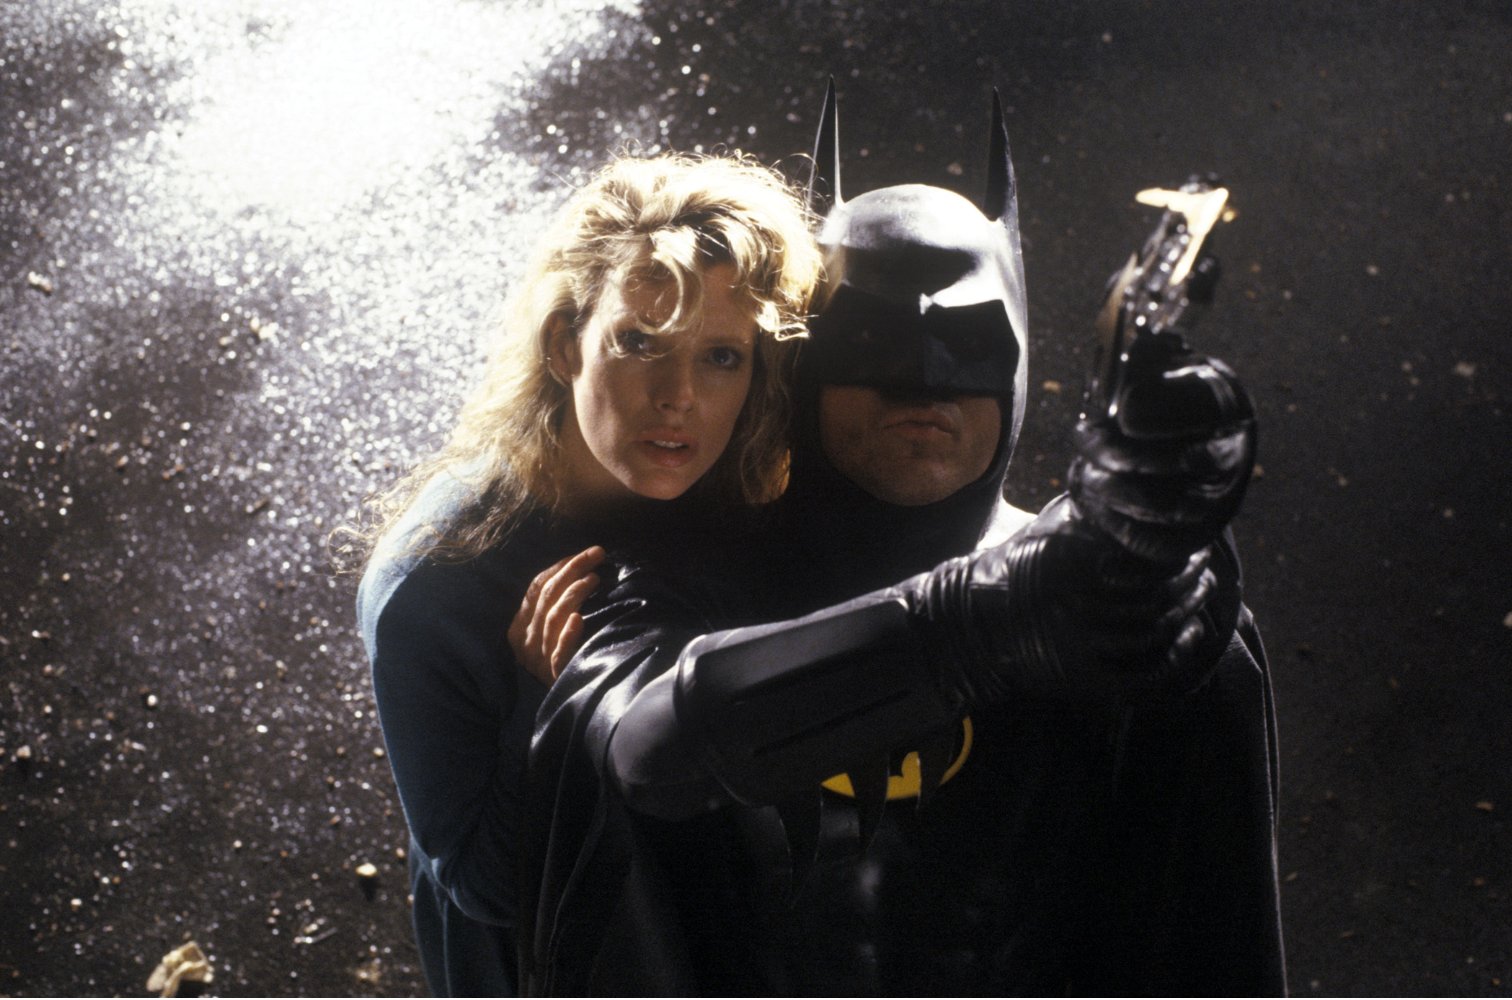 Batman 1989 Full Movie Watch in HD Online for Free - #1 ...